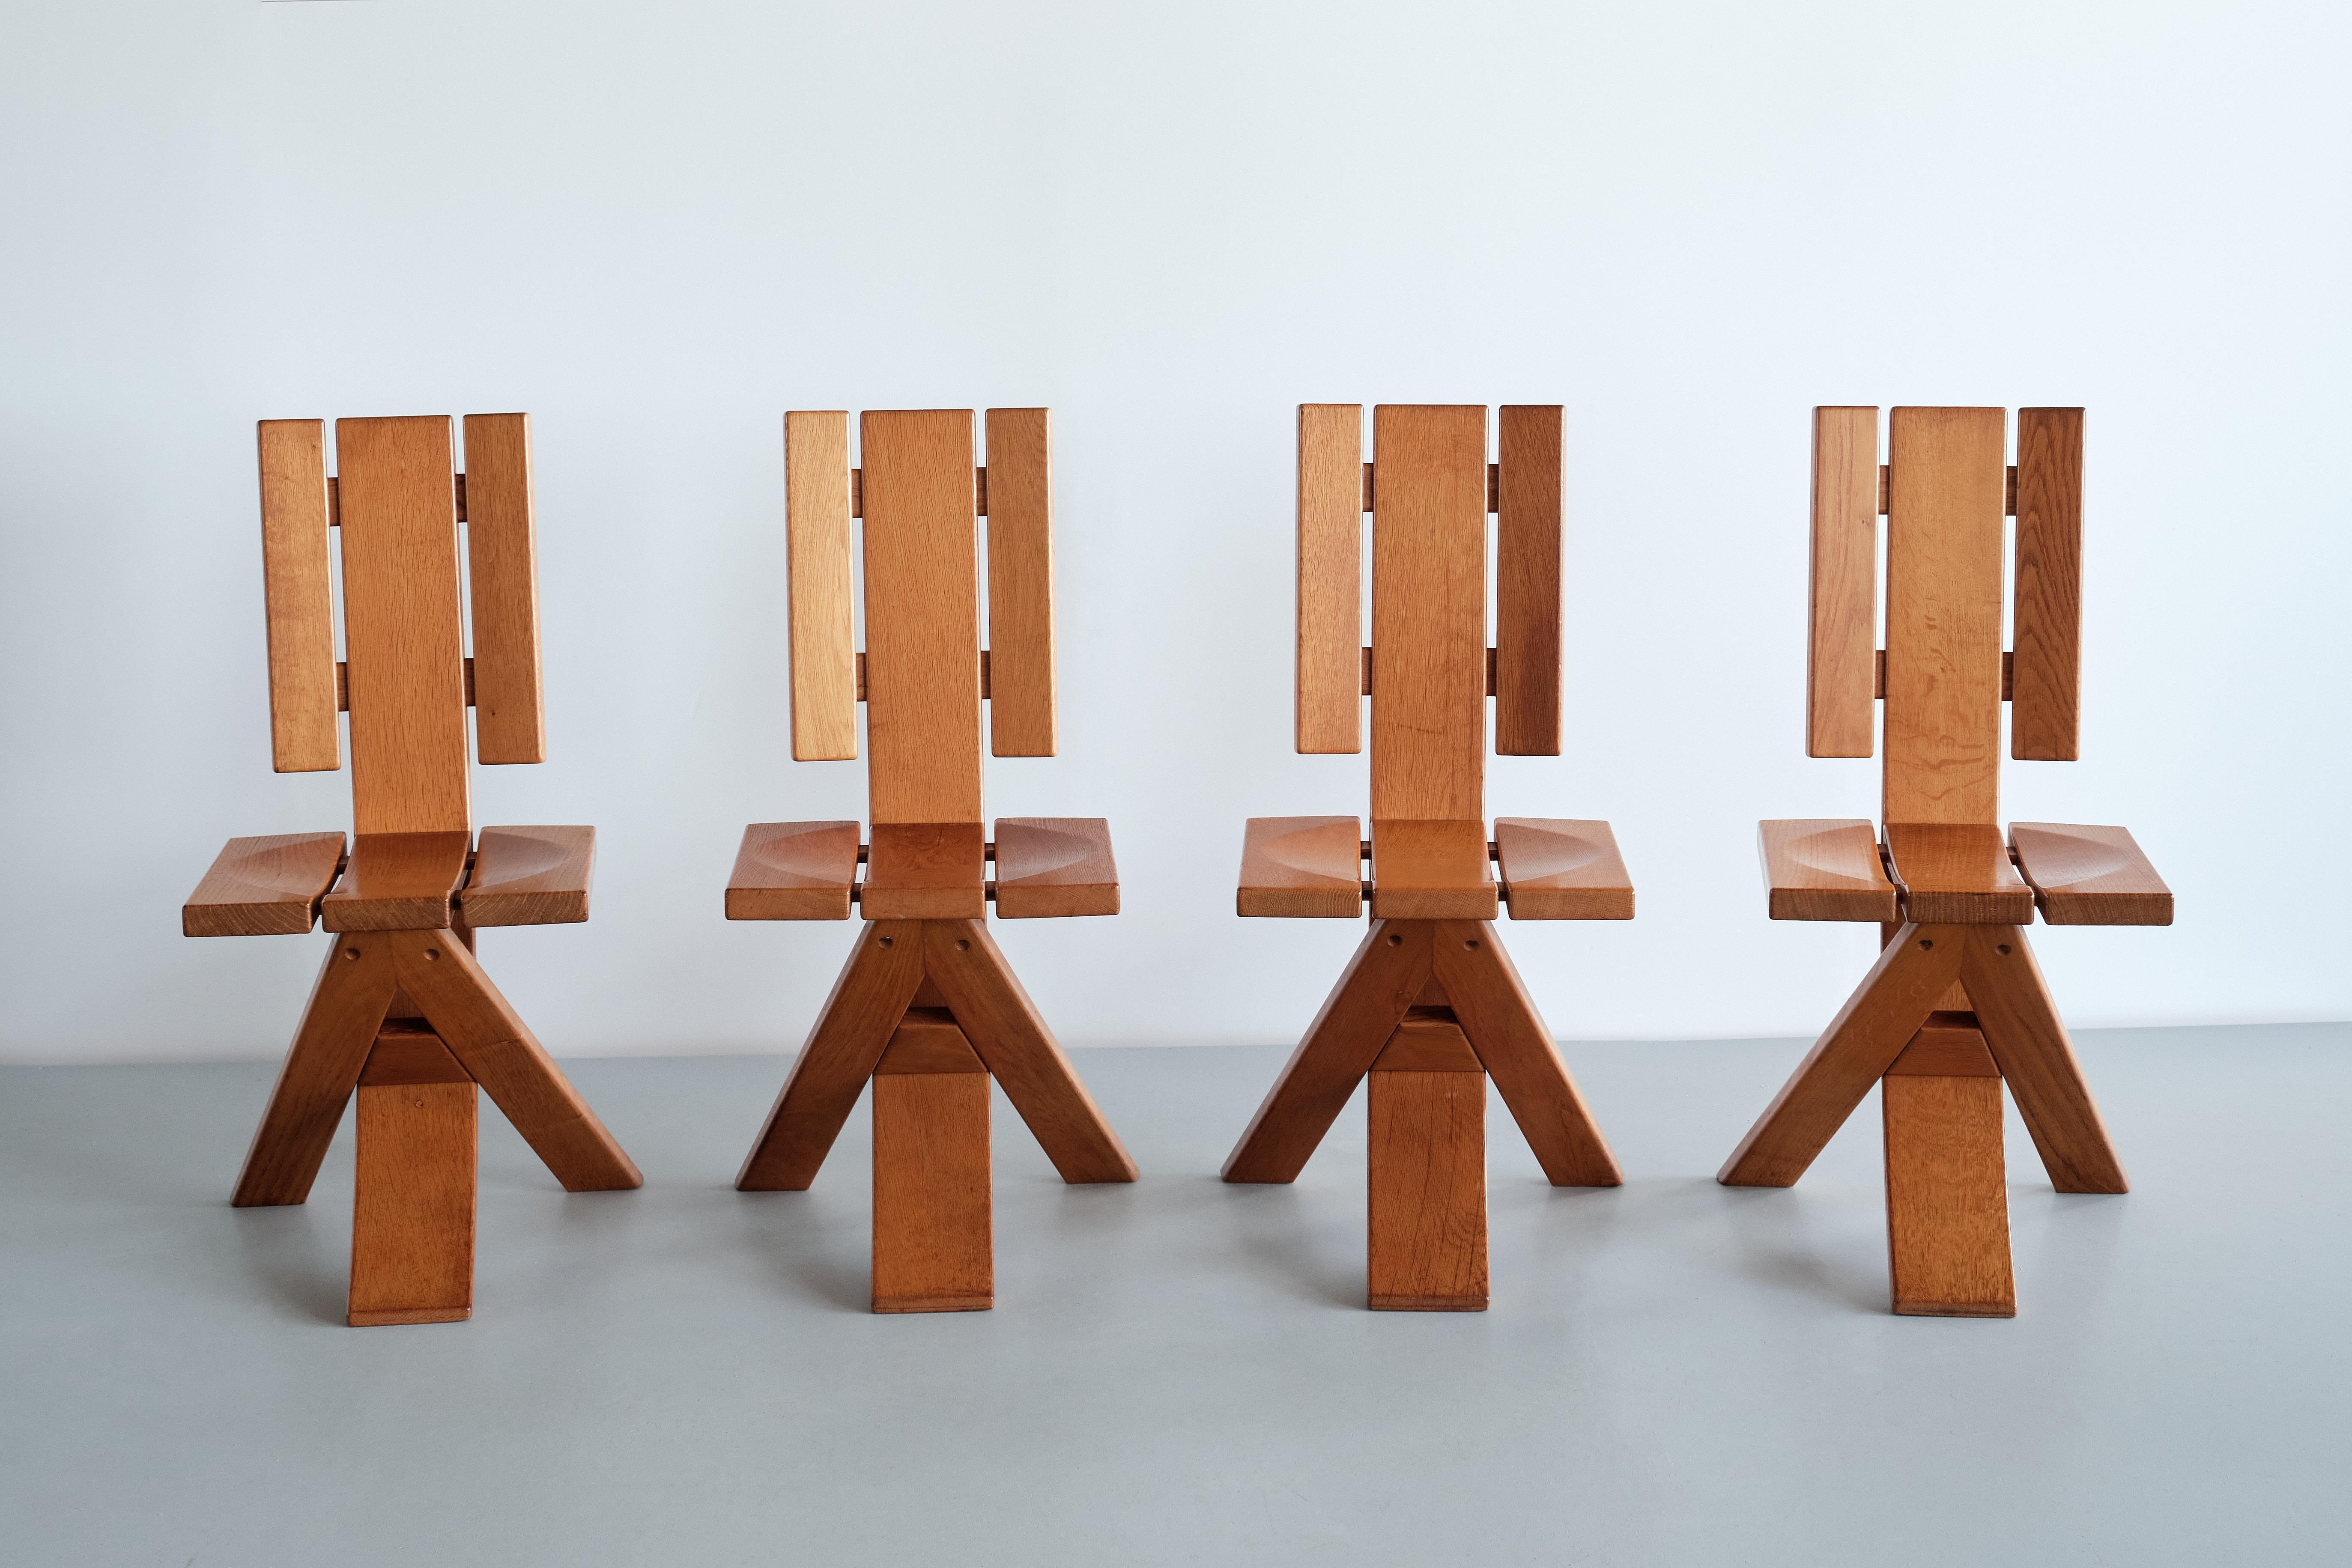 Ce remarquable ensemble de quatre chaises de salle à manger a été produit par le fabricant français Ebénisterie Seltz dans les années 1970. Le design est réalisé en chêne massif. Les lignes dynamiques et contrastées du piètement à trois pieds